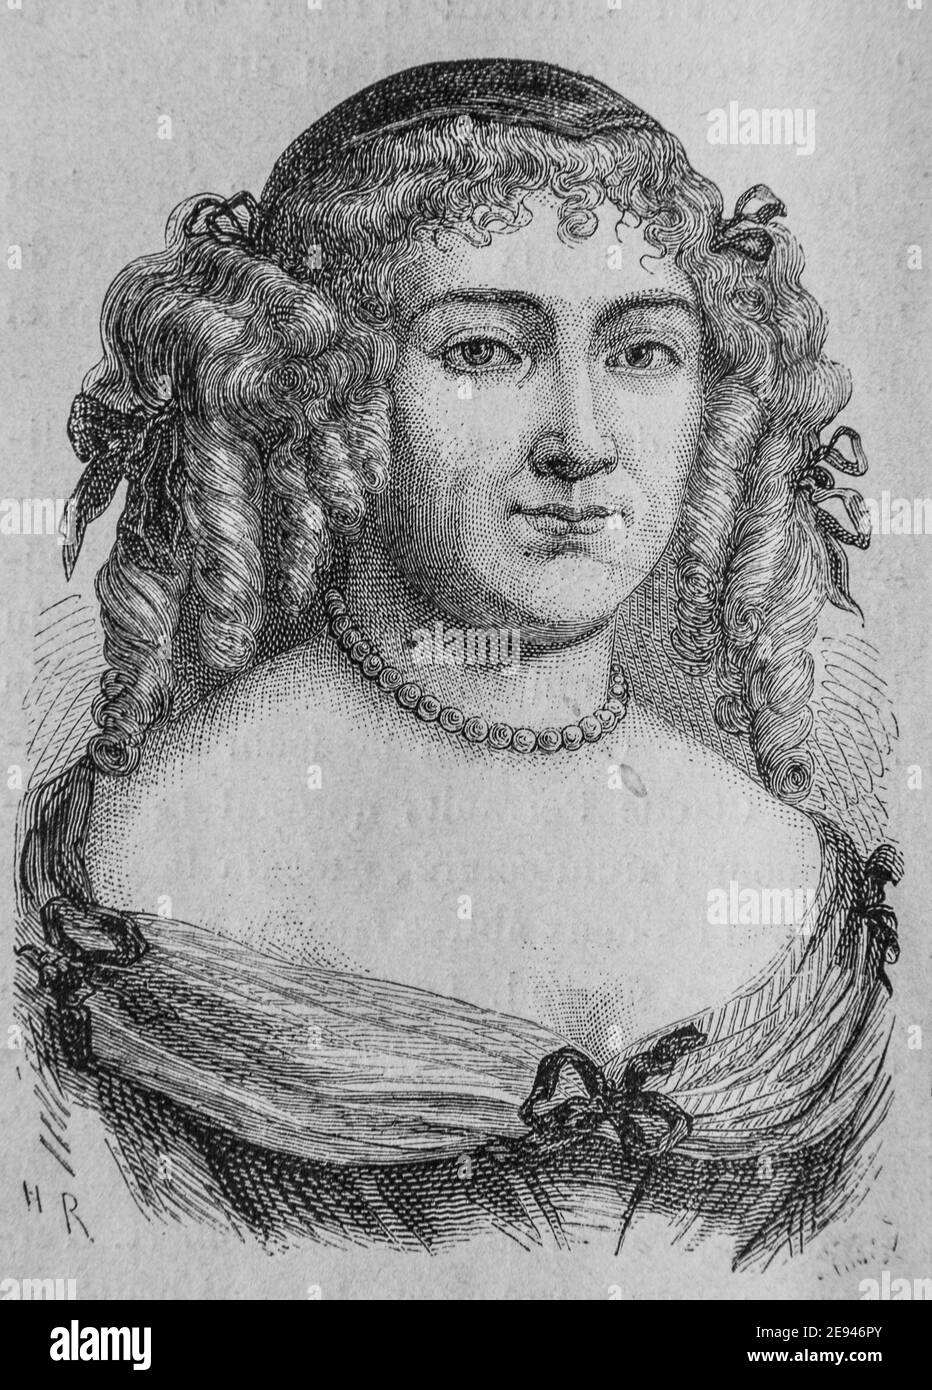 madame de sevigne, histoire populaire de frrance par henri martin,editeur furne 1860 Stock Photo